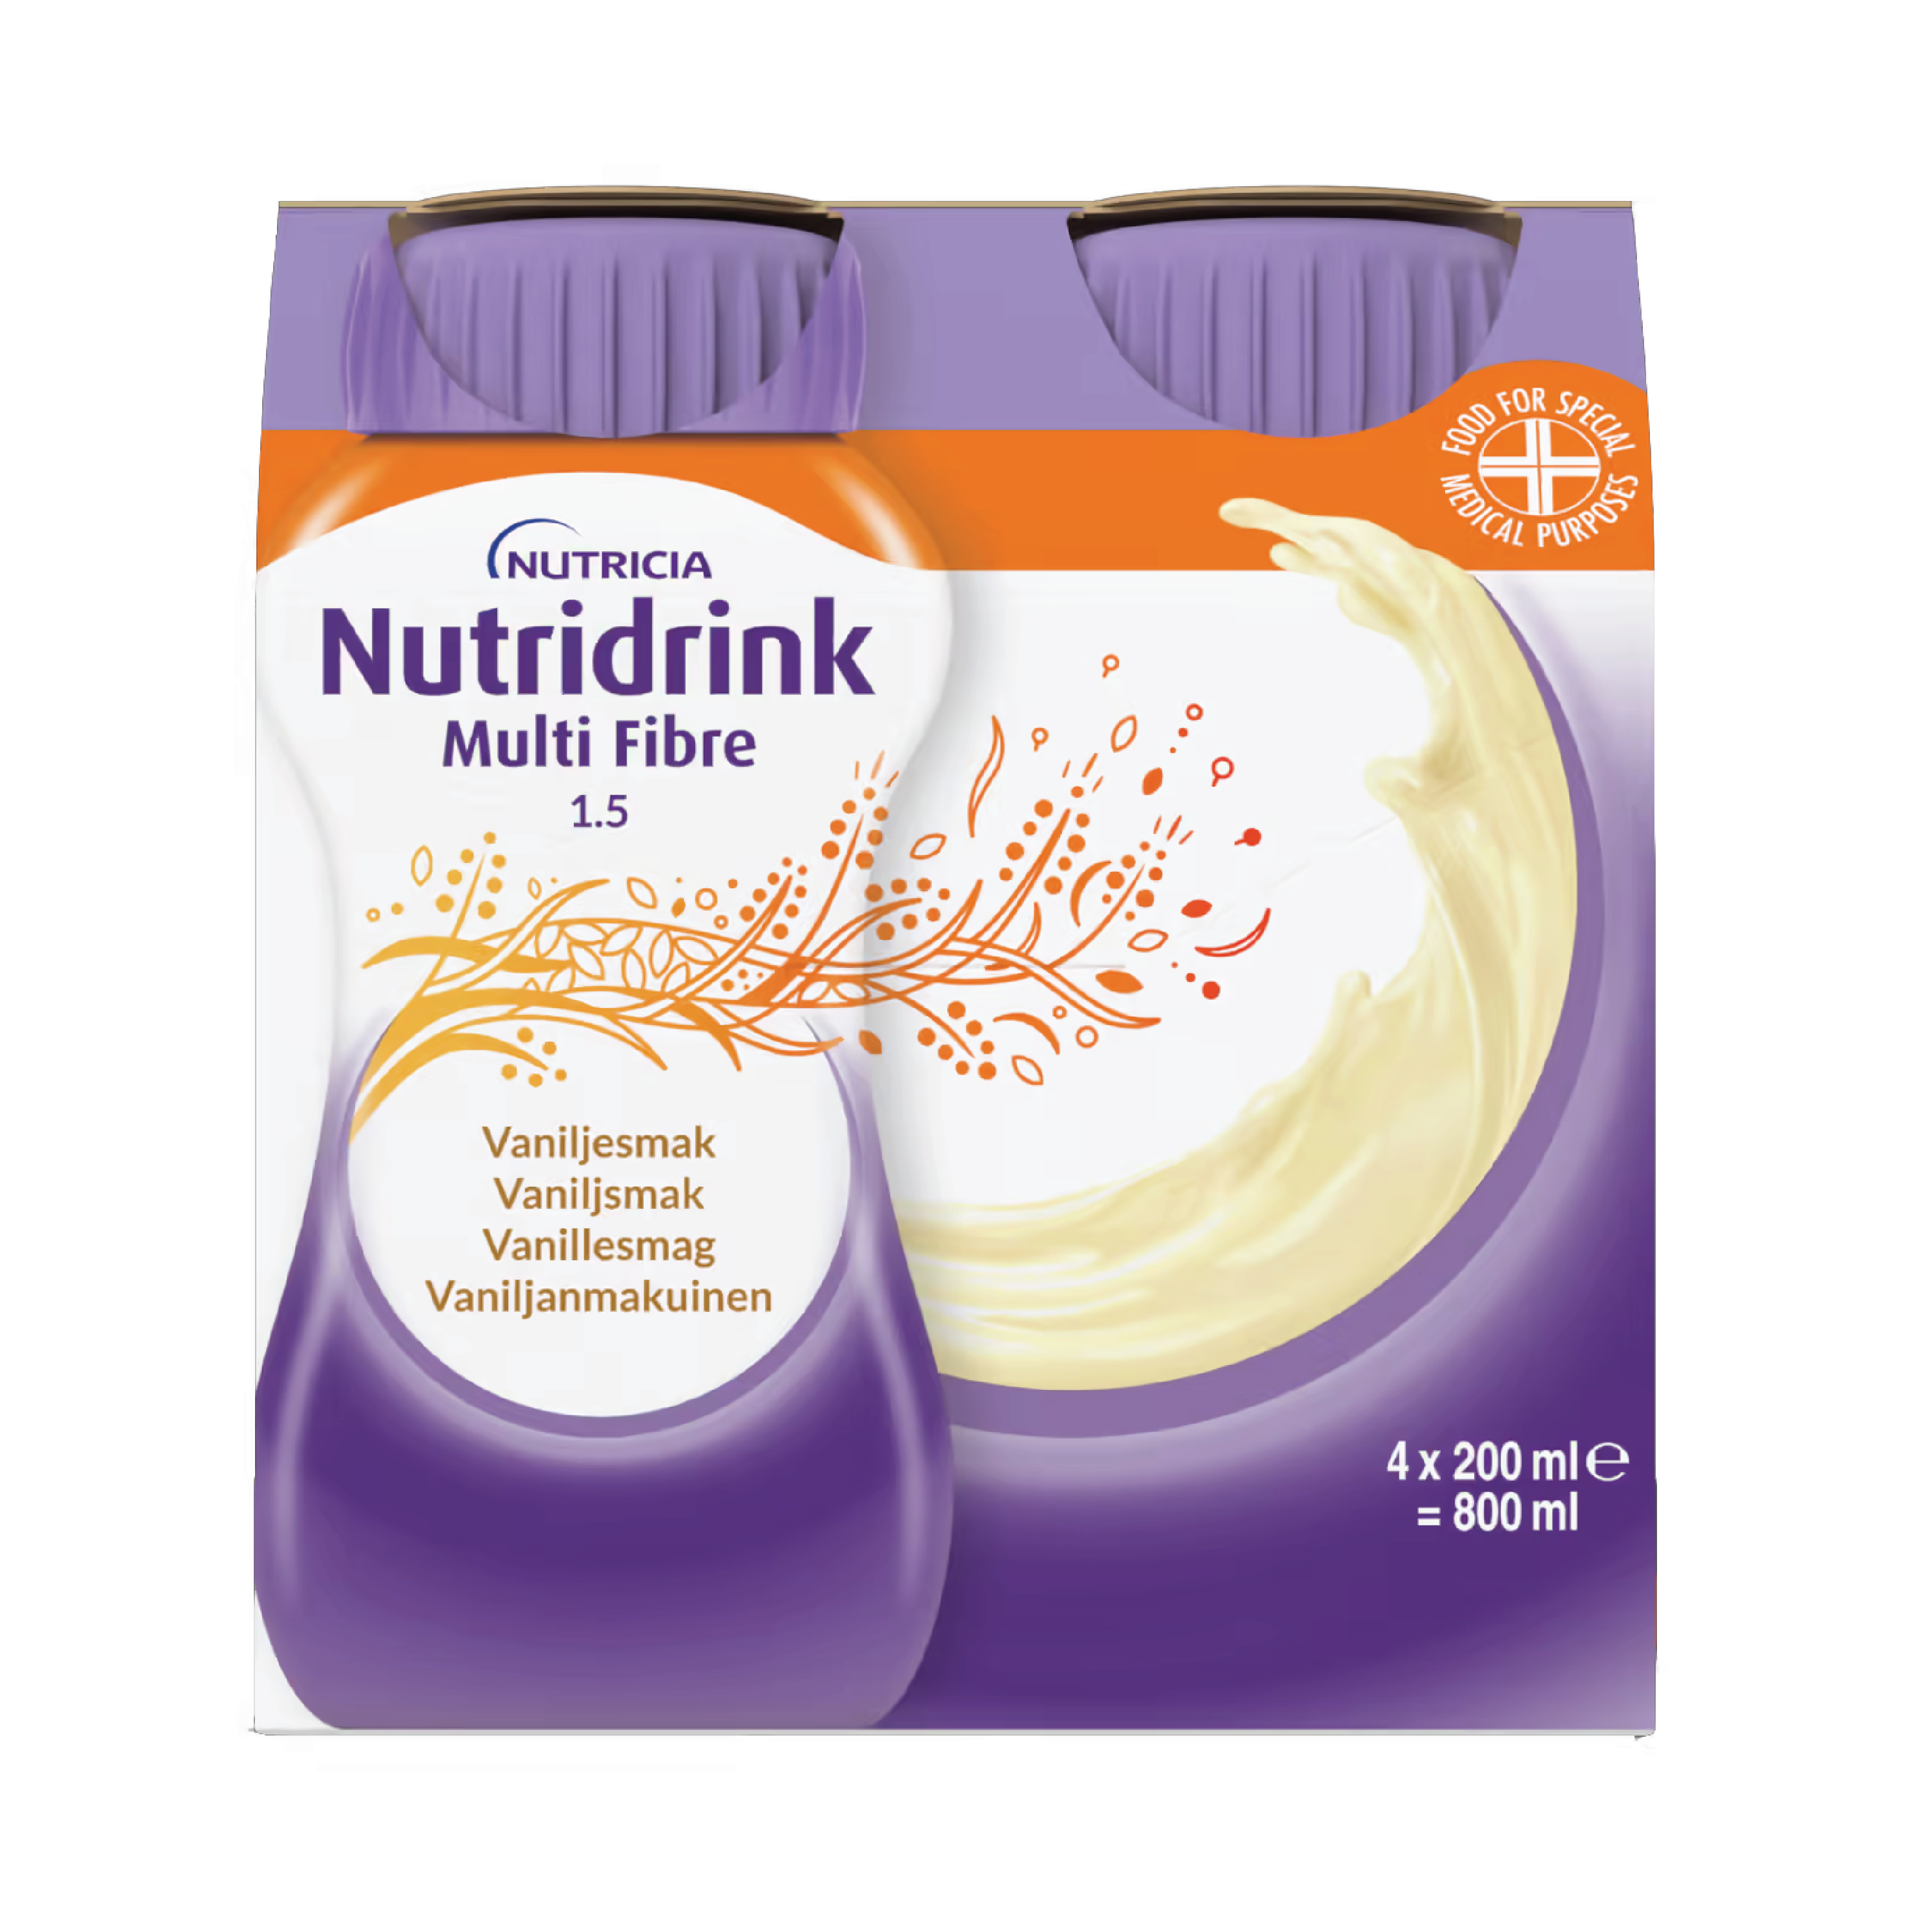 Nutridrink Multi Fibre Næringsdrikk, Vanilje, 4x200 ml